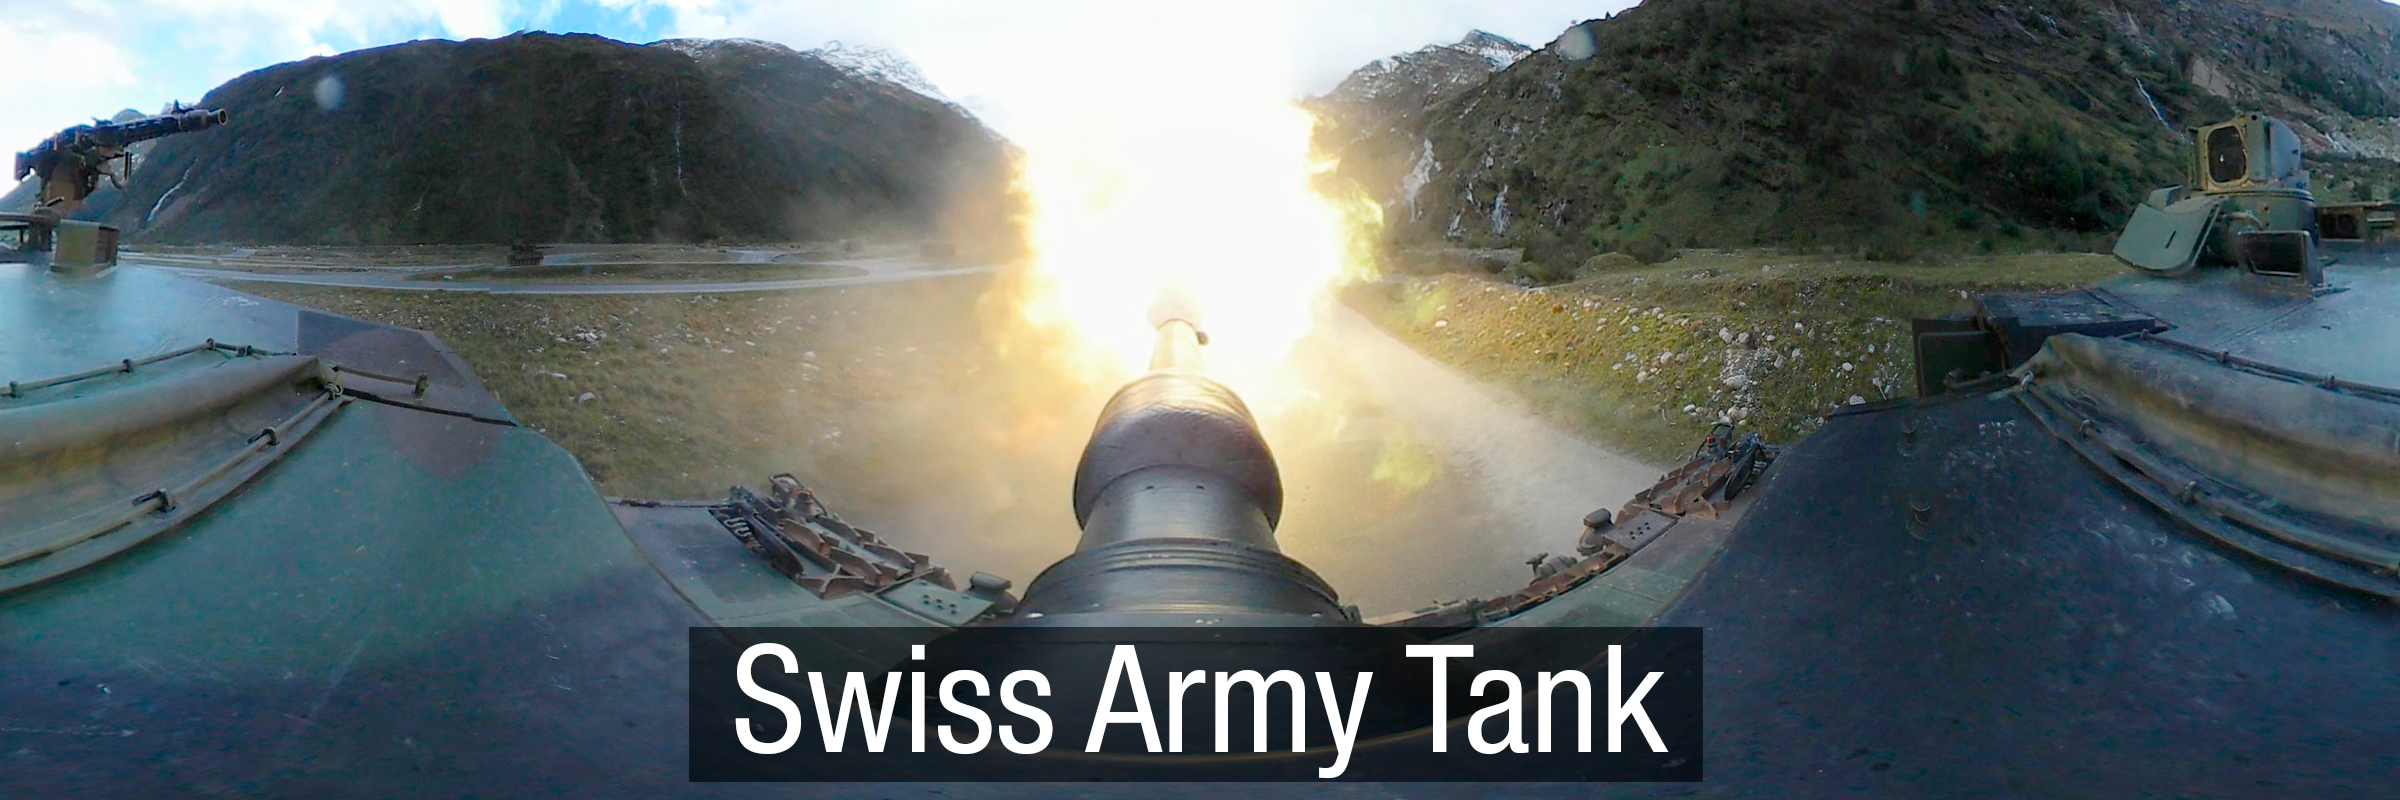 Swiss Army Tank